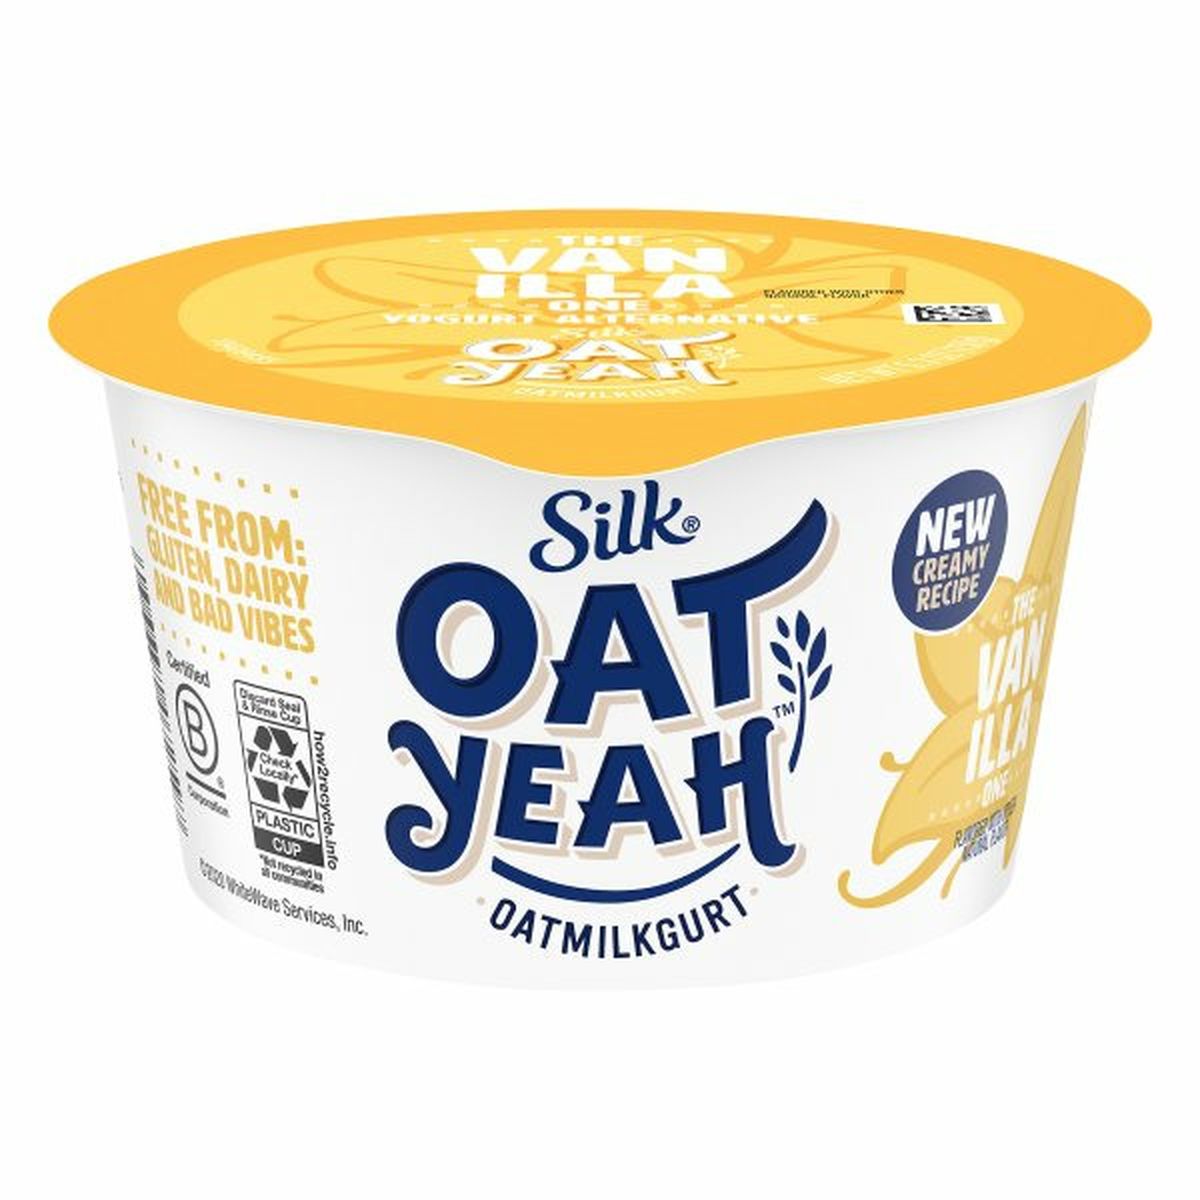 Calories in Silk Oat Yeah Oatmilkgurt, The Vanilla One